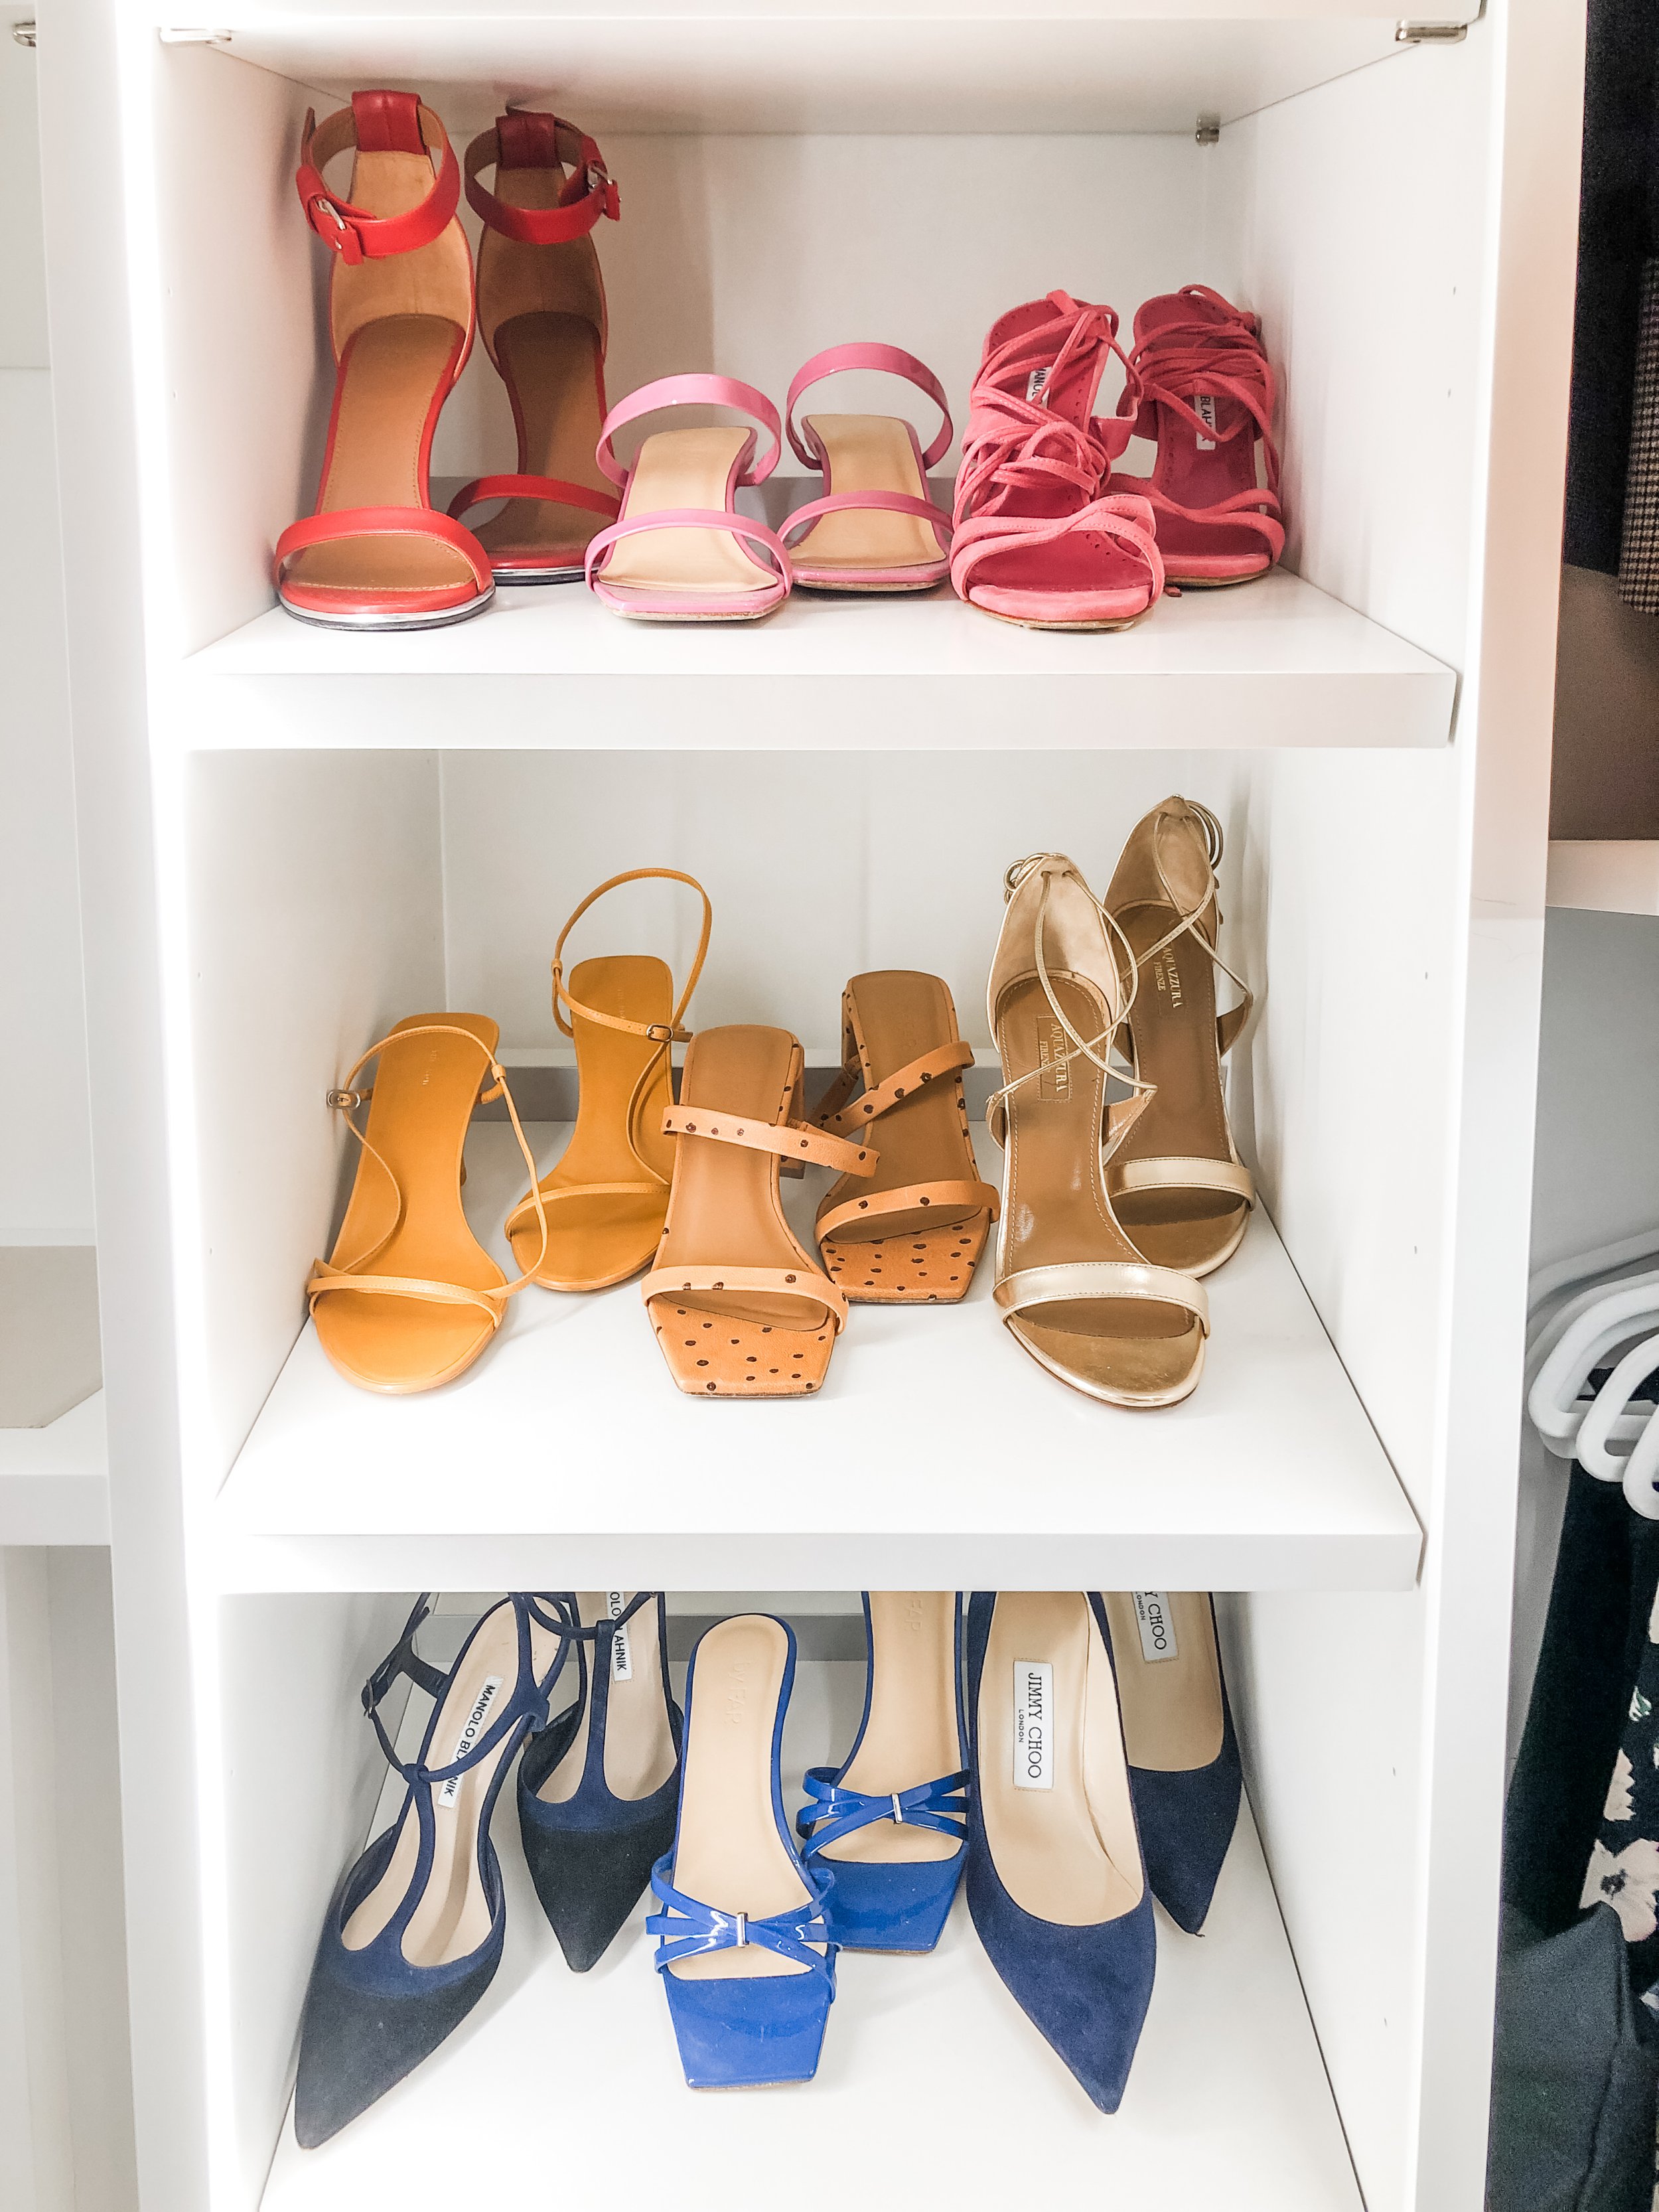 Women's high heels arranged in a closet shelf